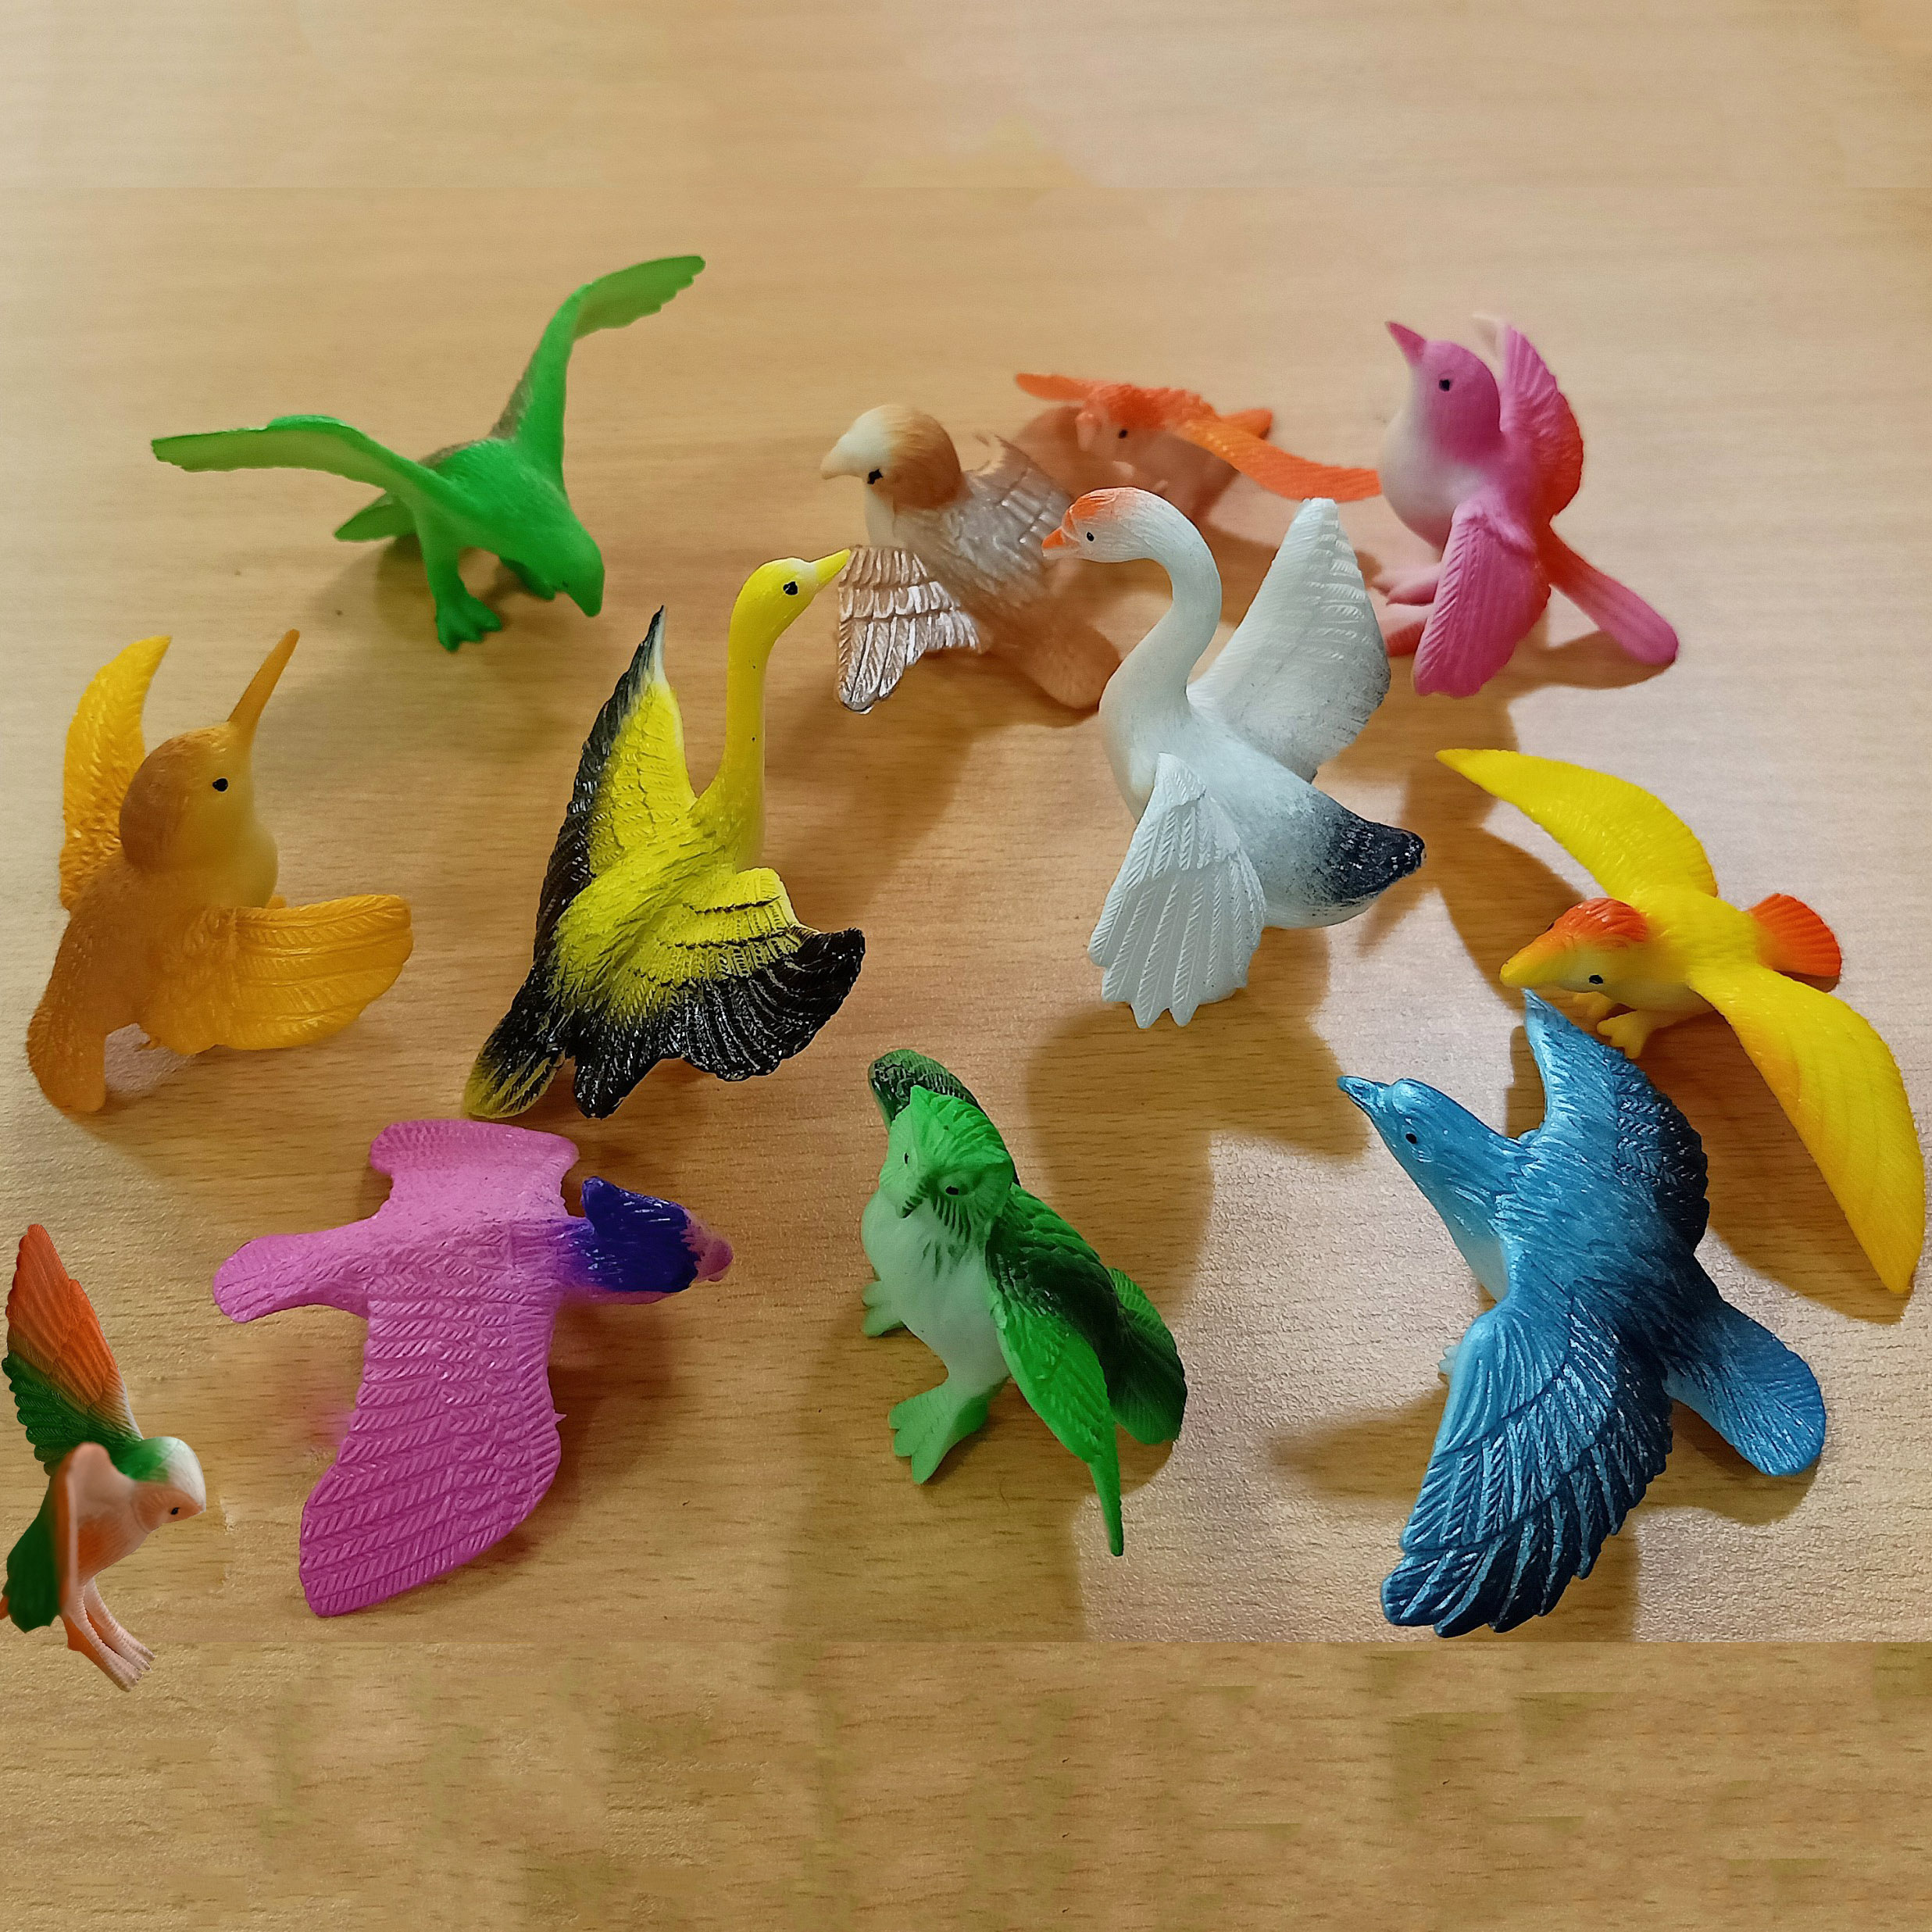 Mô hình 12 các loại chim hạc chim cú chim sẻ vẹt cho các bạn trang trí tiểu cảnh, terrarium, móc chìa khóa, DIY